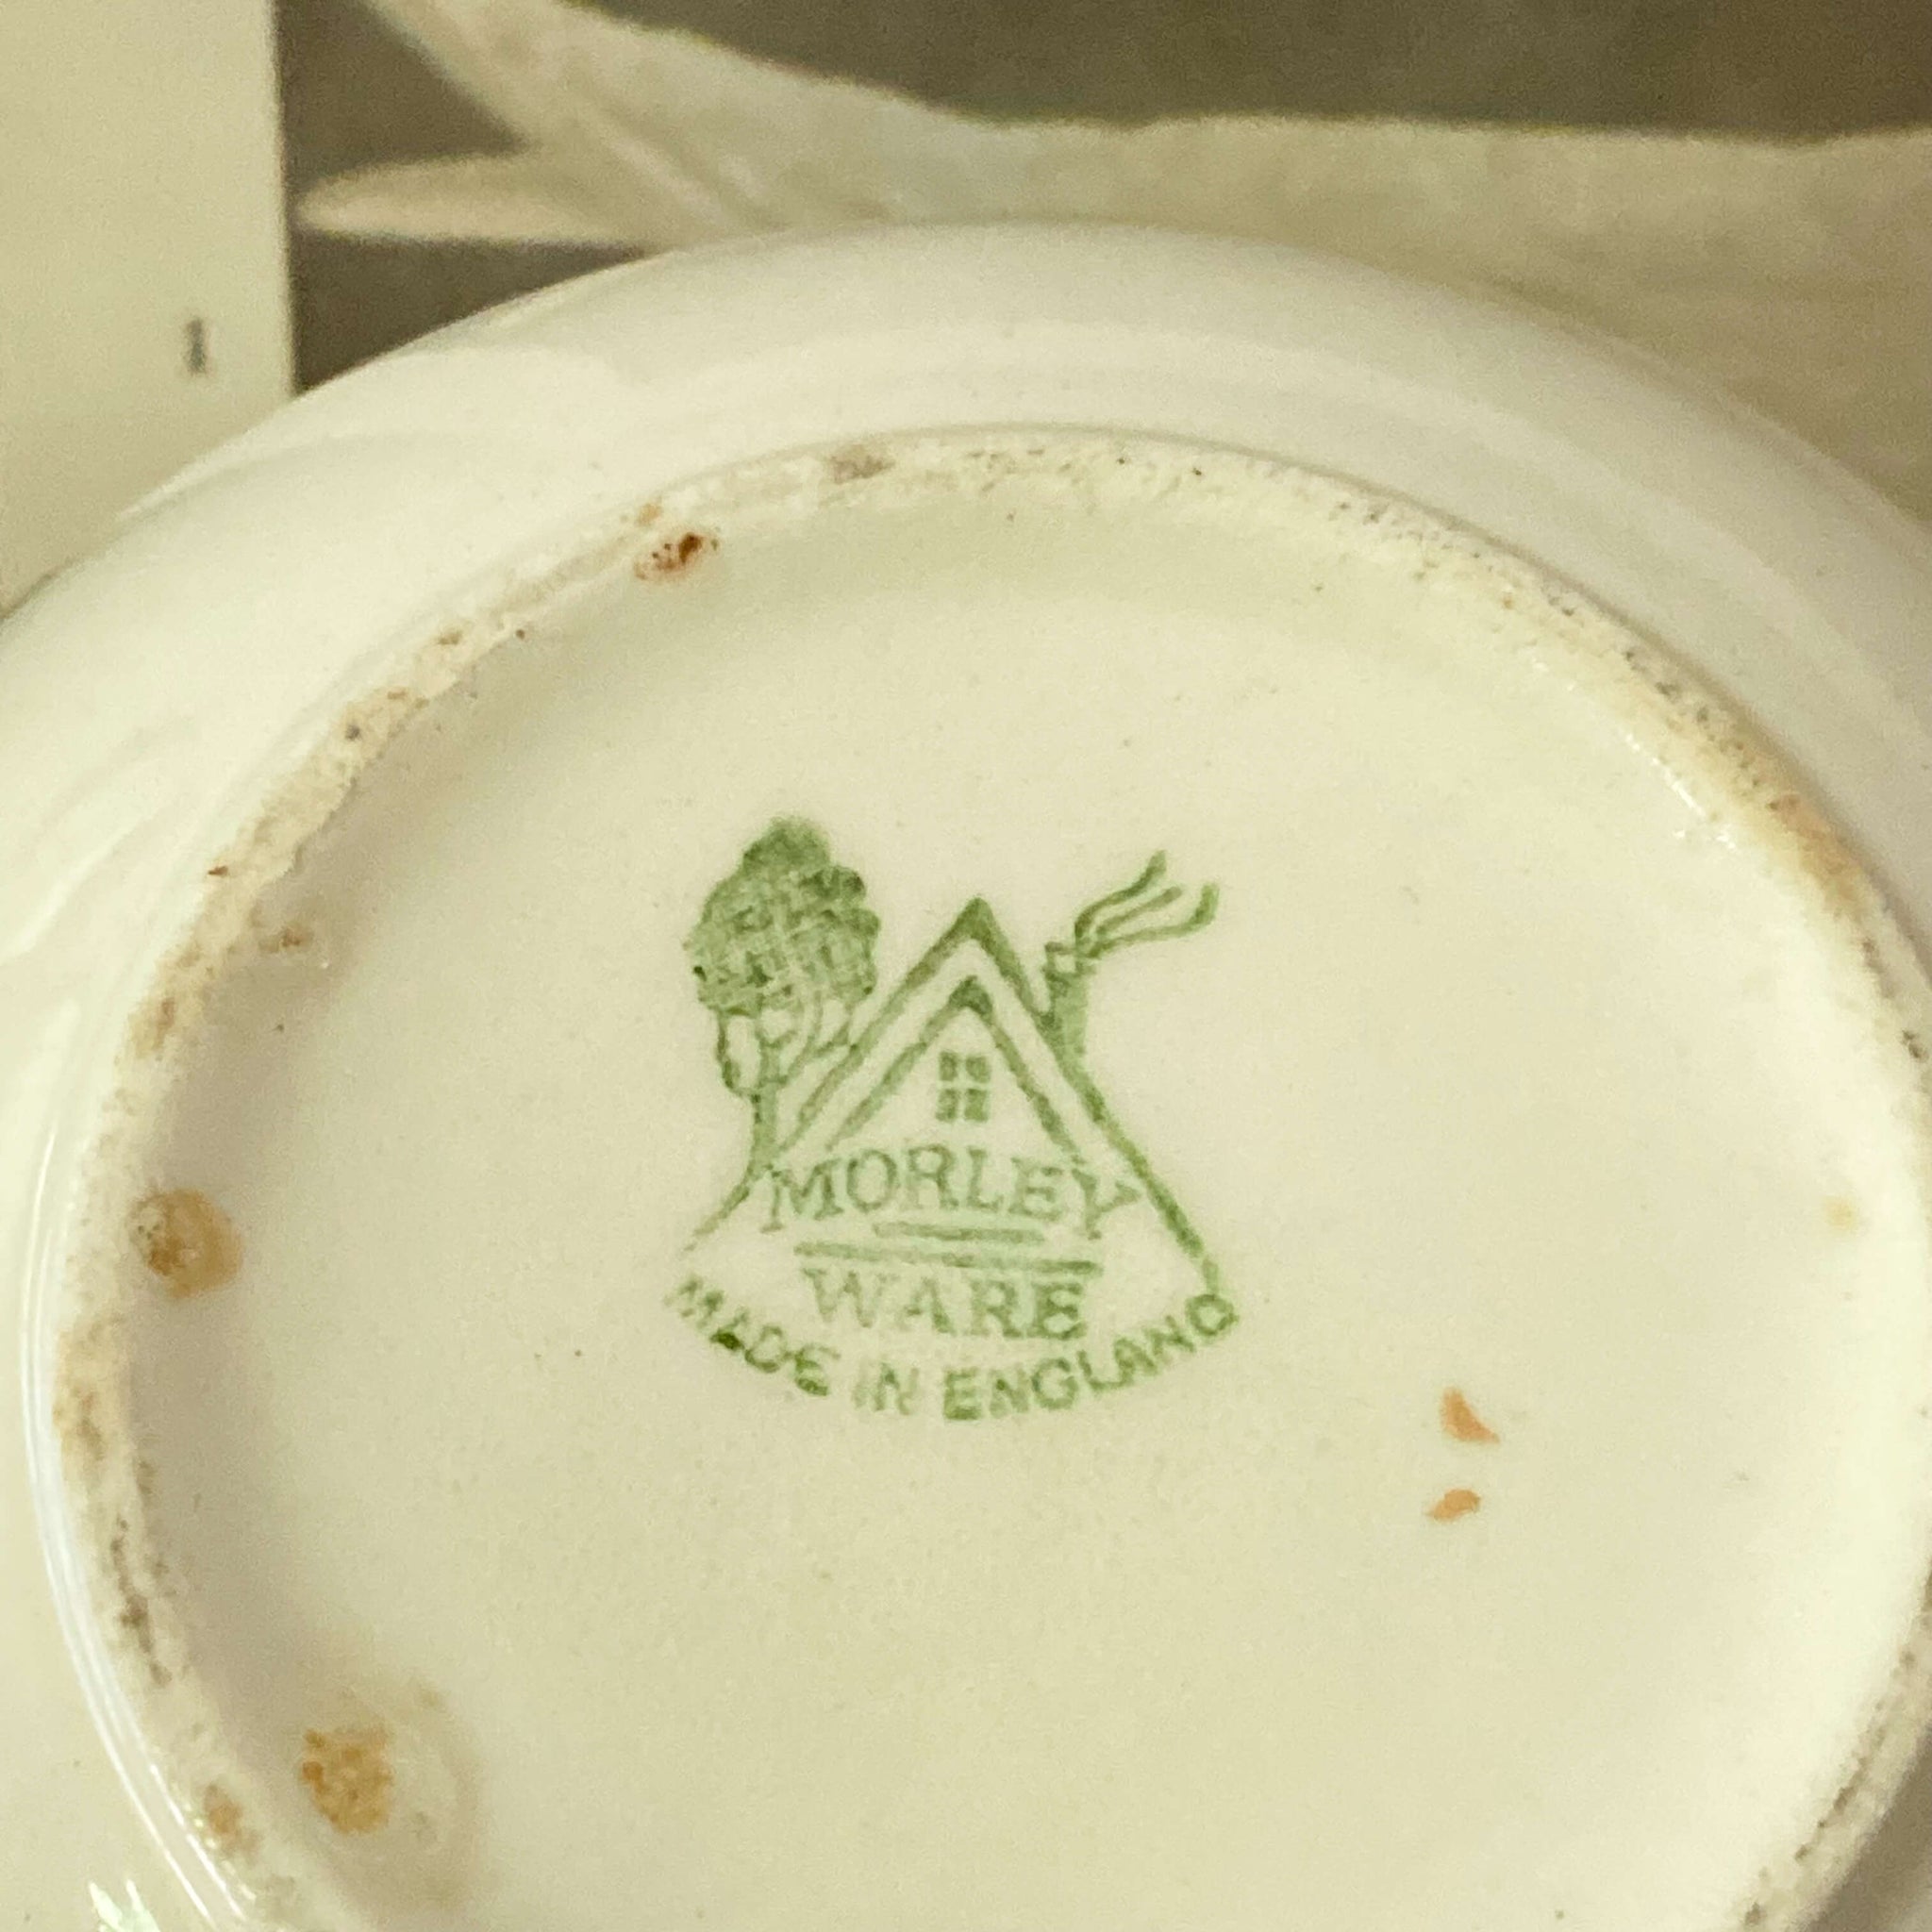 Rare Vintage Morley, Fox & Co Springtime Bowl circa 1938 Made in England